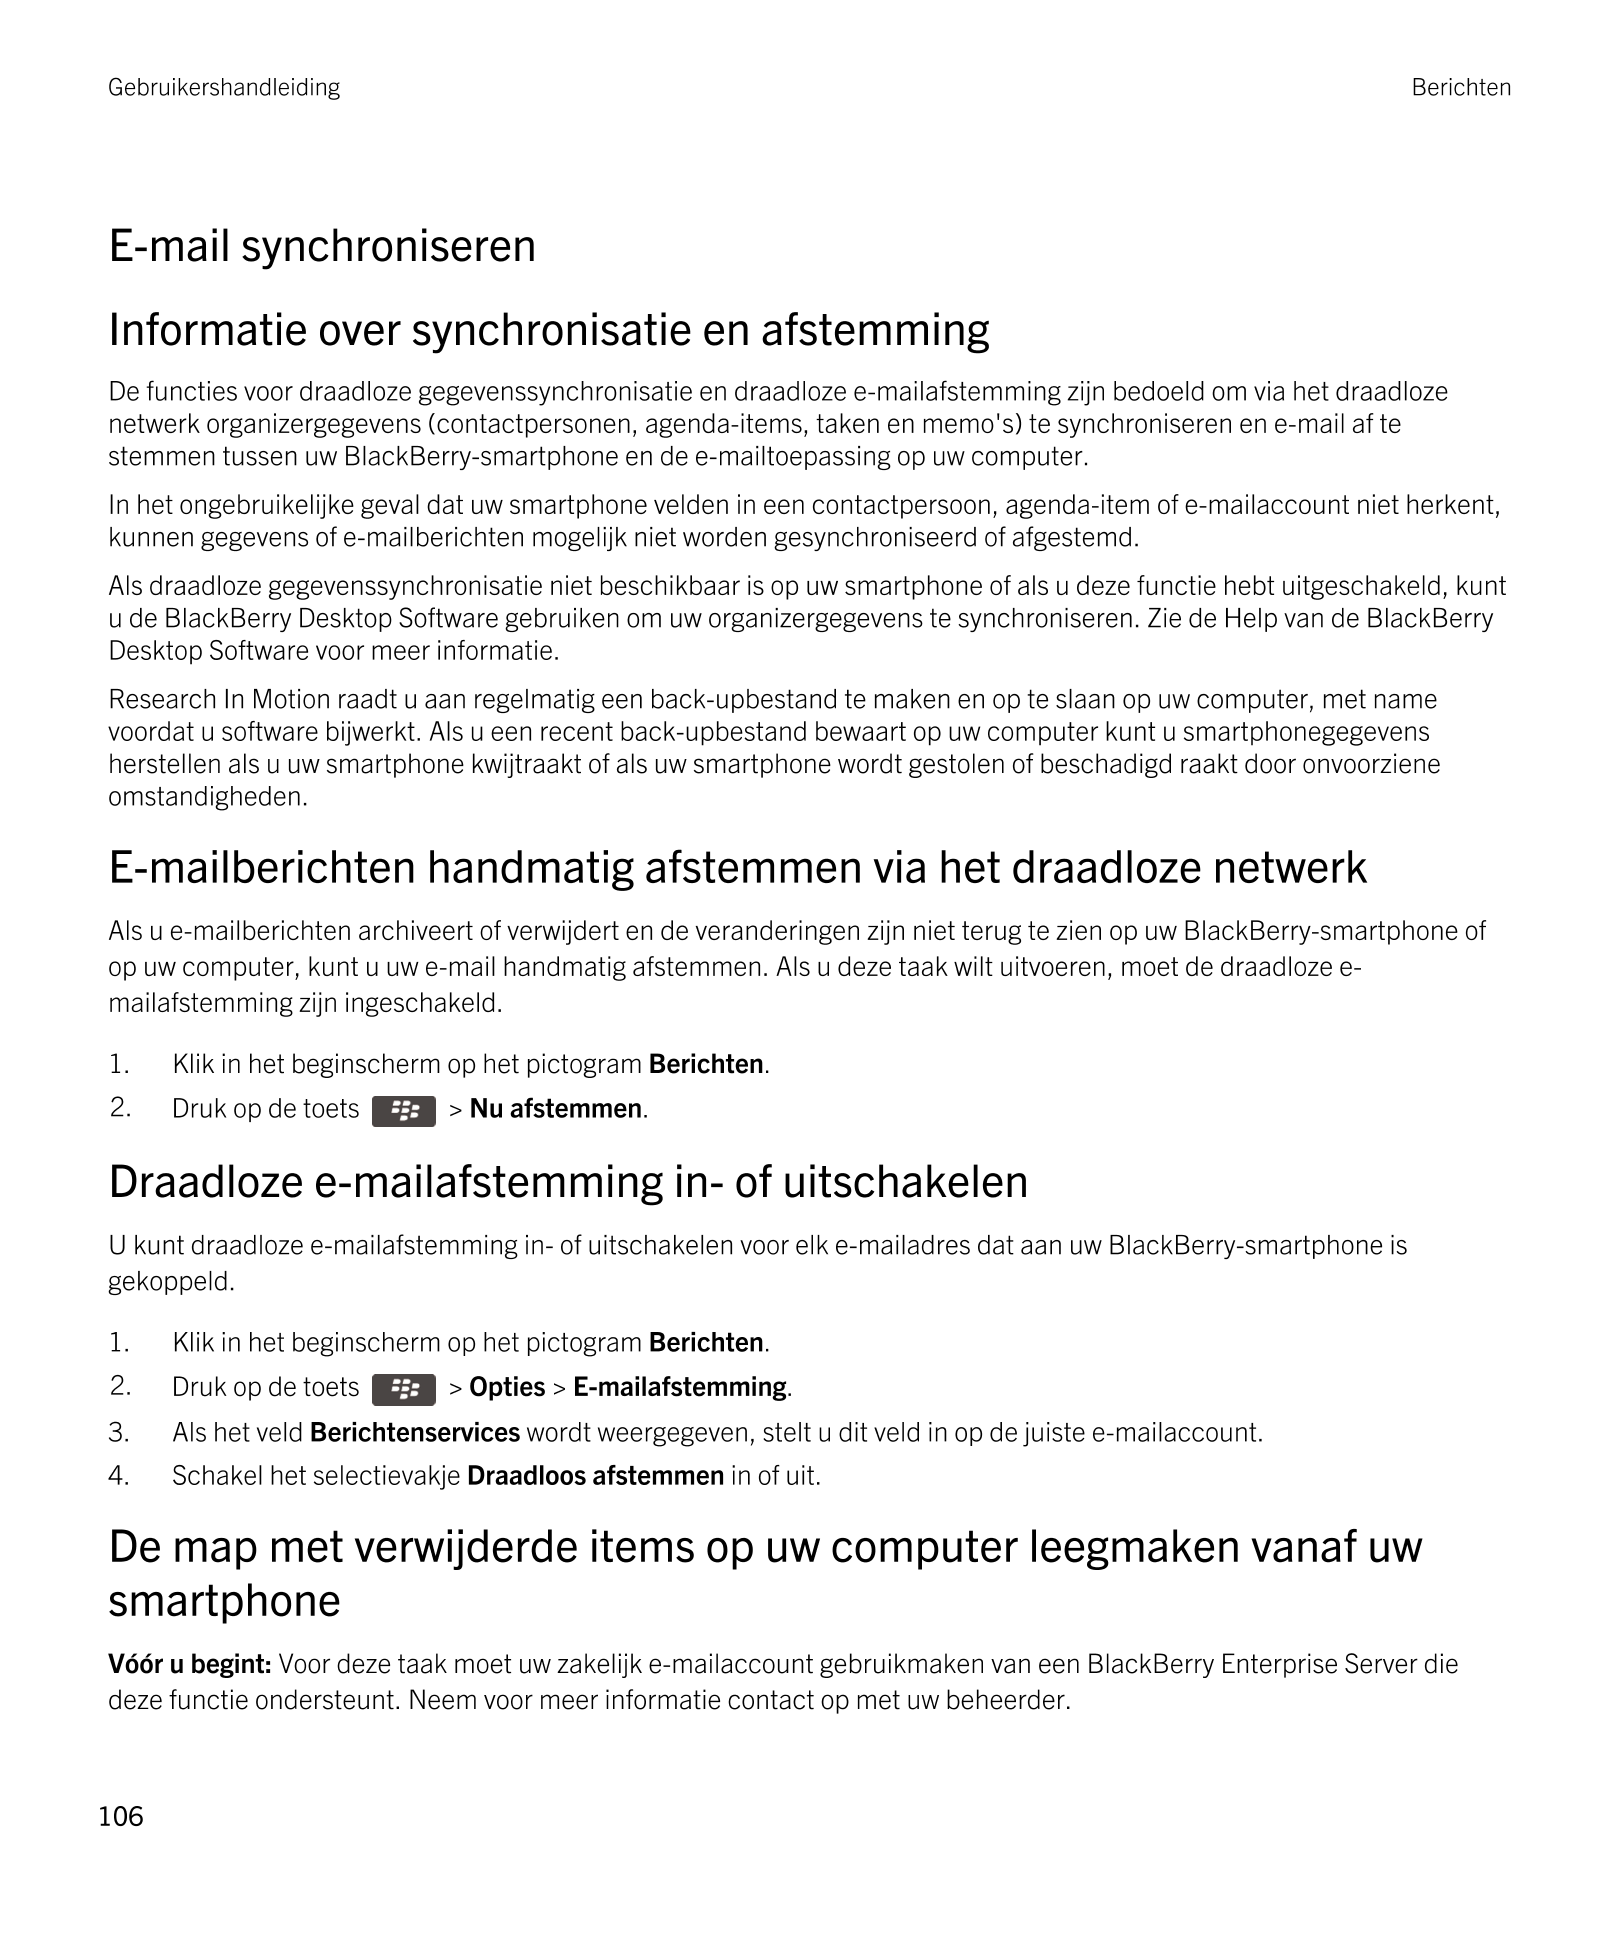 Gebruikershandleiding Berichten
E-mail synchroniseren
Informatie over synchronisatie en afstemming
De functies voor draadloze ge